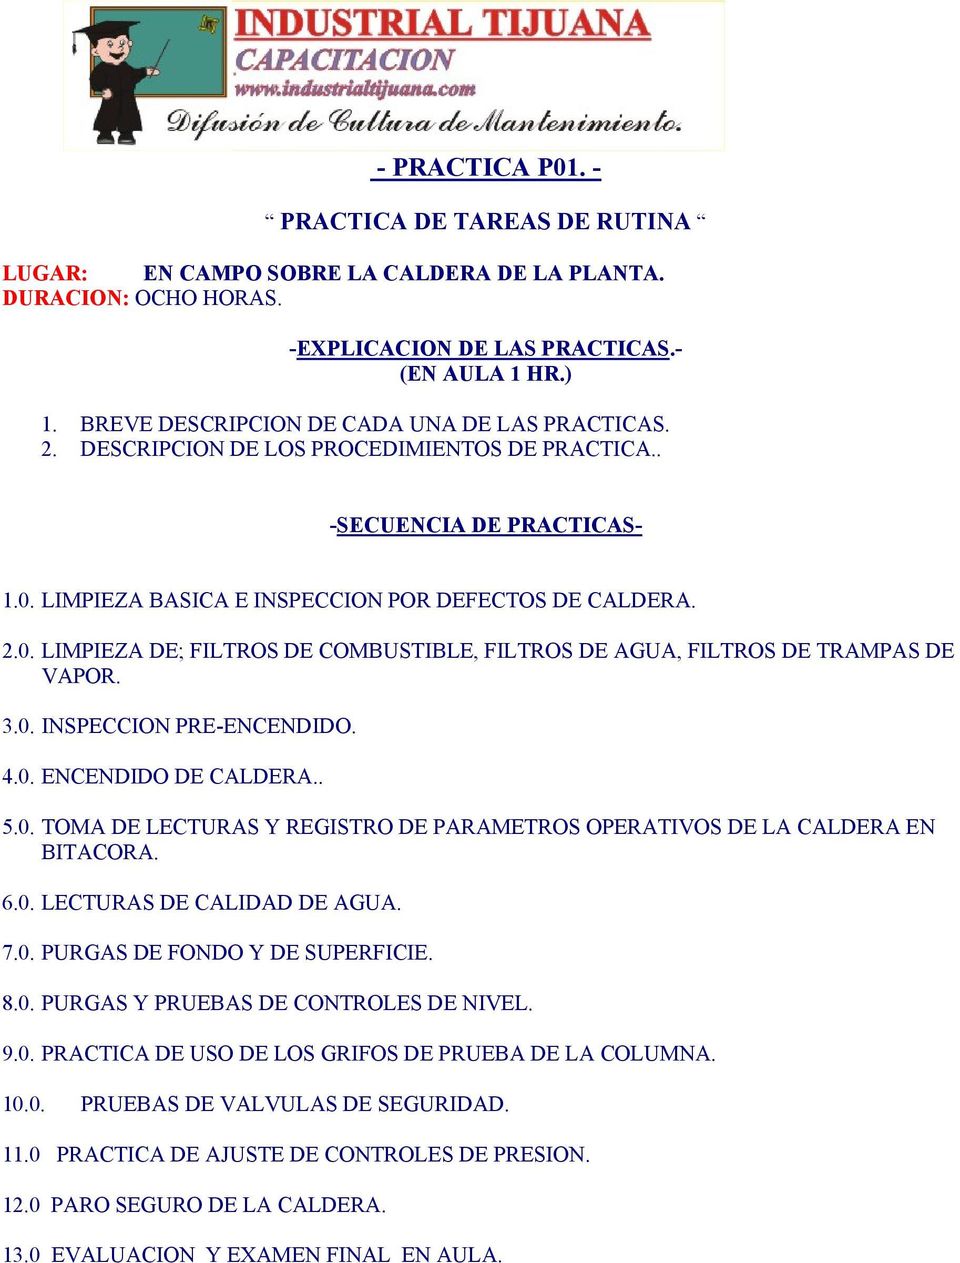 LIMPIEZA BASICA E INSPECCION POR DEFECTOS DE CALDERA. 2.0. LIMPIEZA DE; FILTROS DE COMBUSTIBLE, FILTROS DE AGUA, FILTROS DE TRAMPAS DE VAPOR. 3.0. INSPECCION PRE-ENCENDIDO. 4.0. ENCENDIDO DE CALDERA.